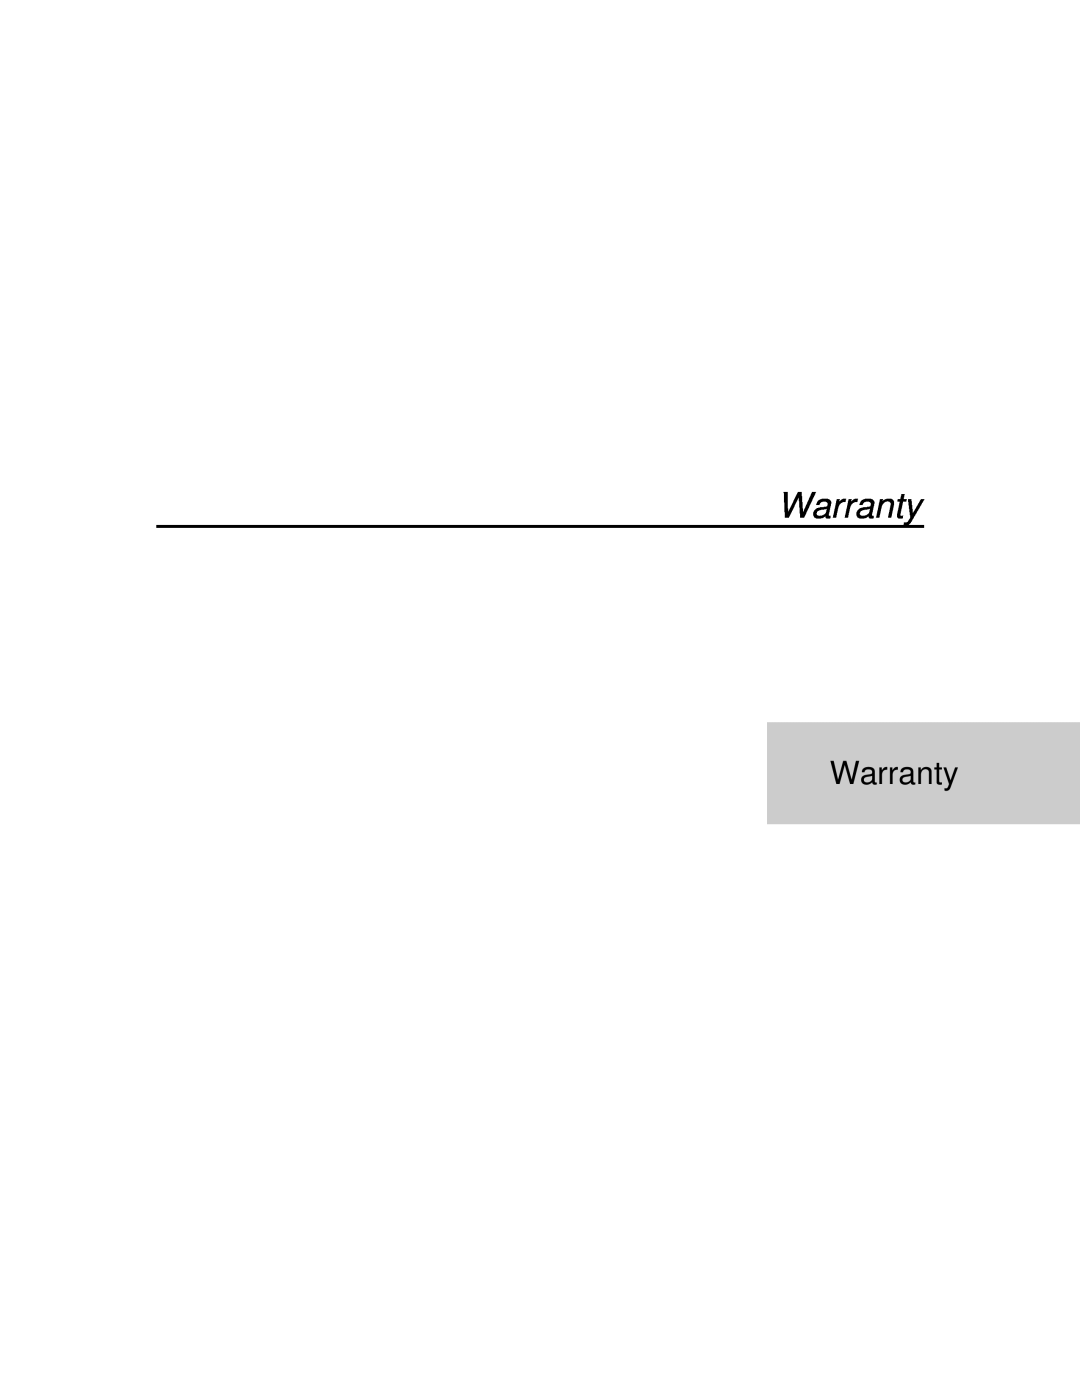 Xerox P12 manual Warranty 